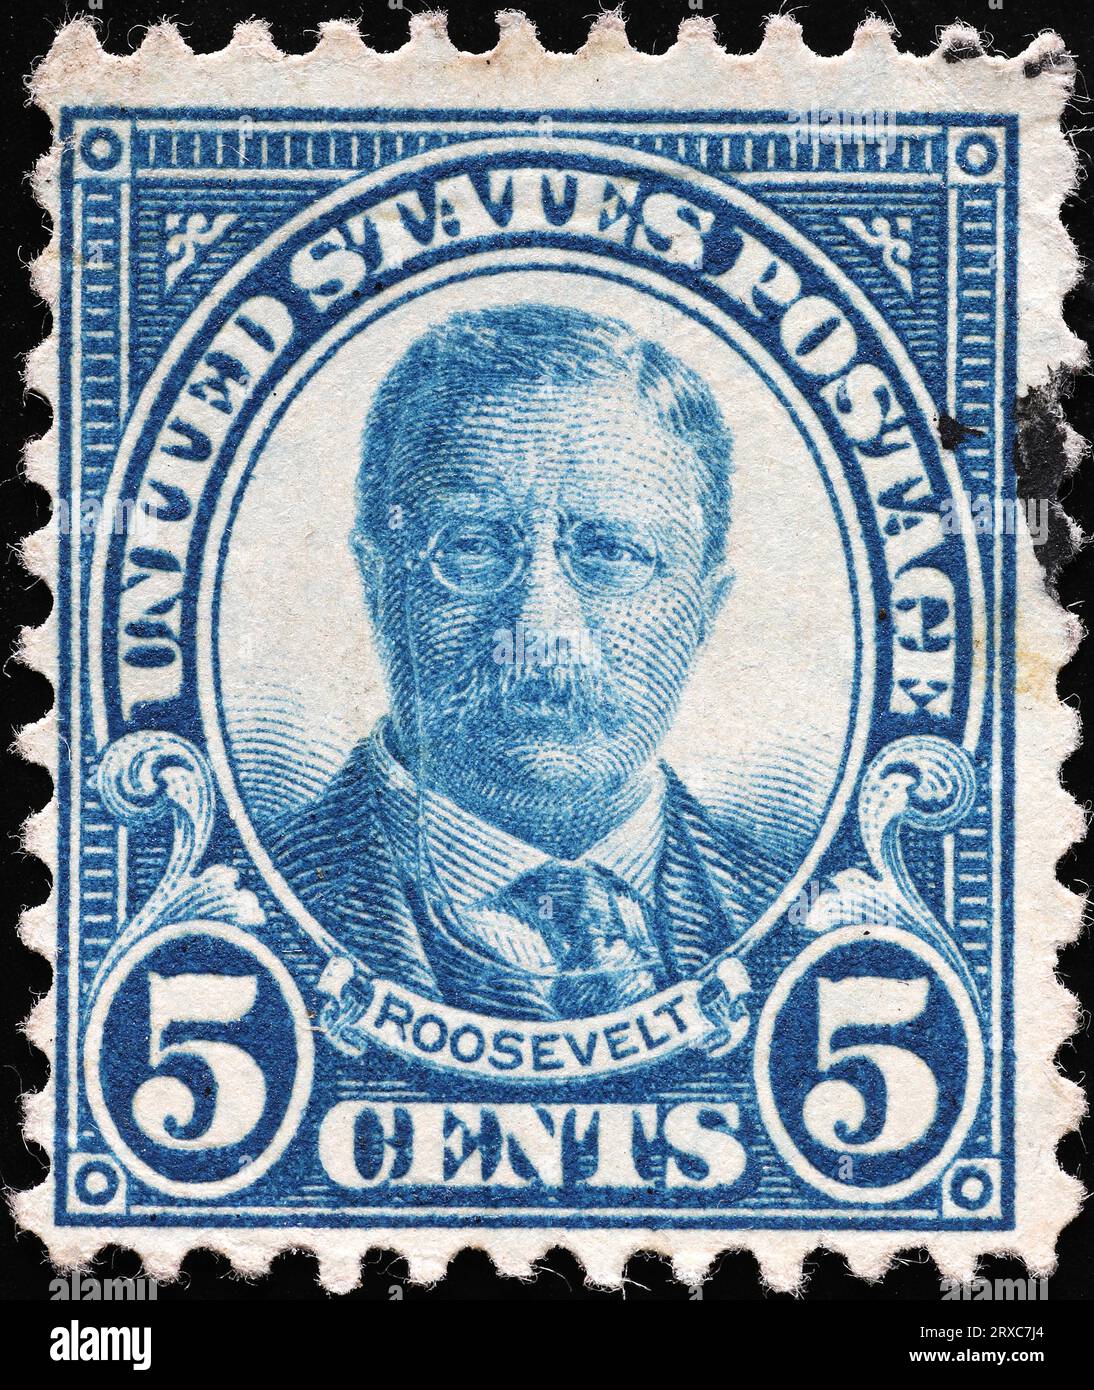 Il Presidente DEGLI STATI UNITI Theodore Rooosevelt sul vecchio francobollo Foto Stock